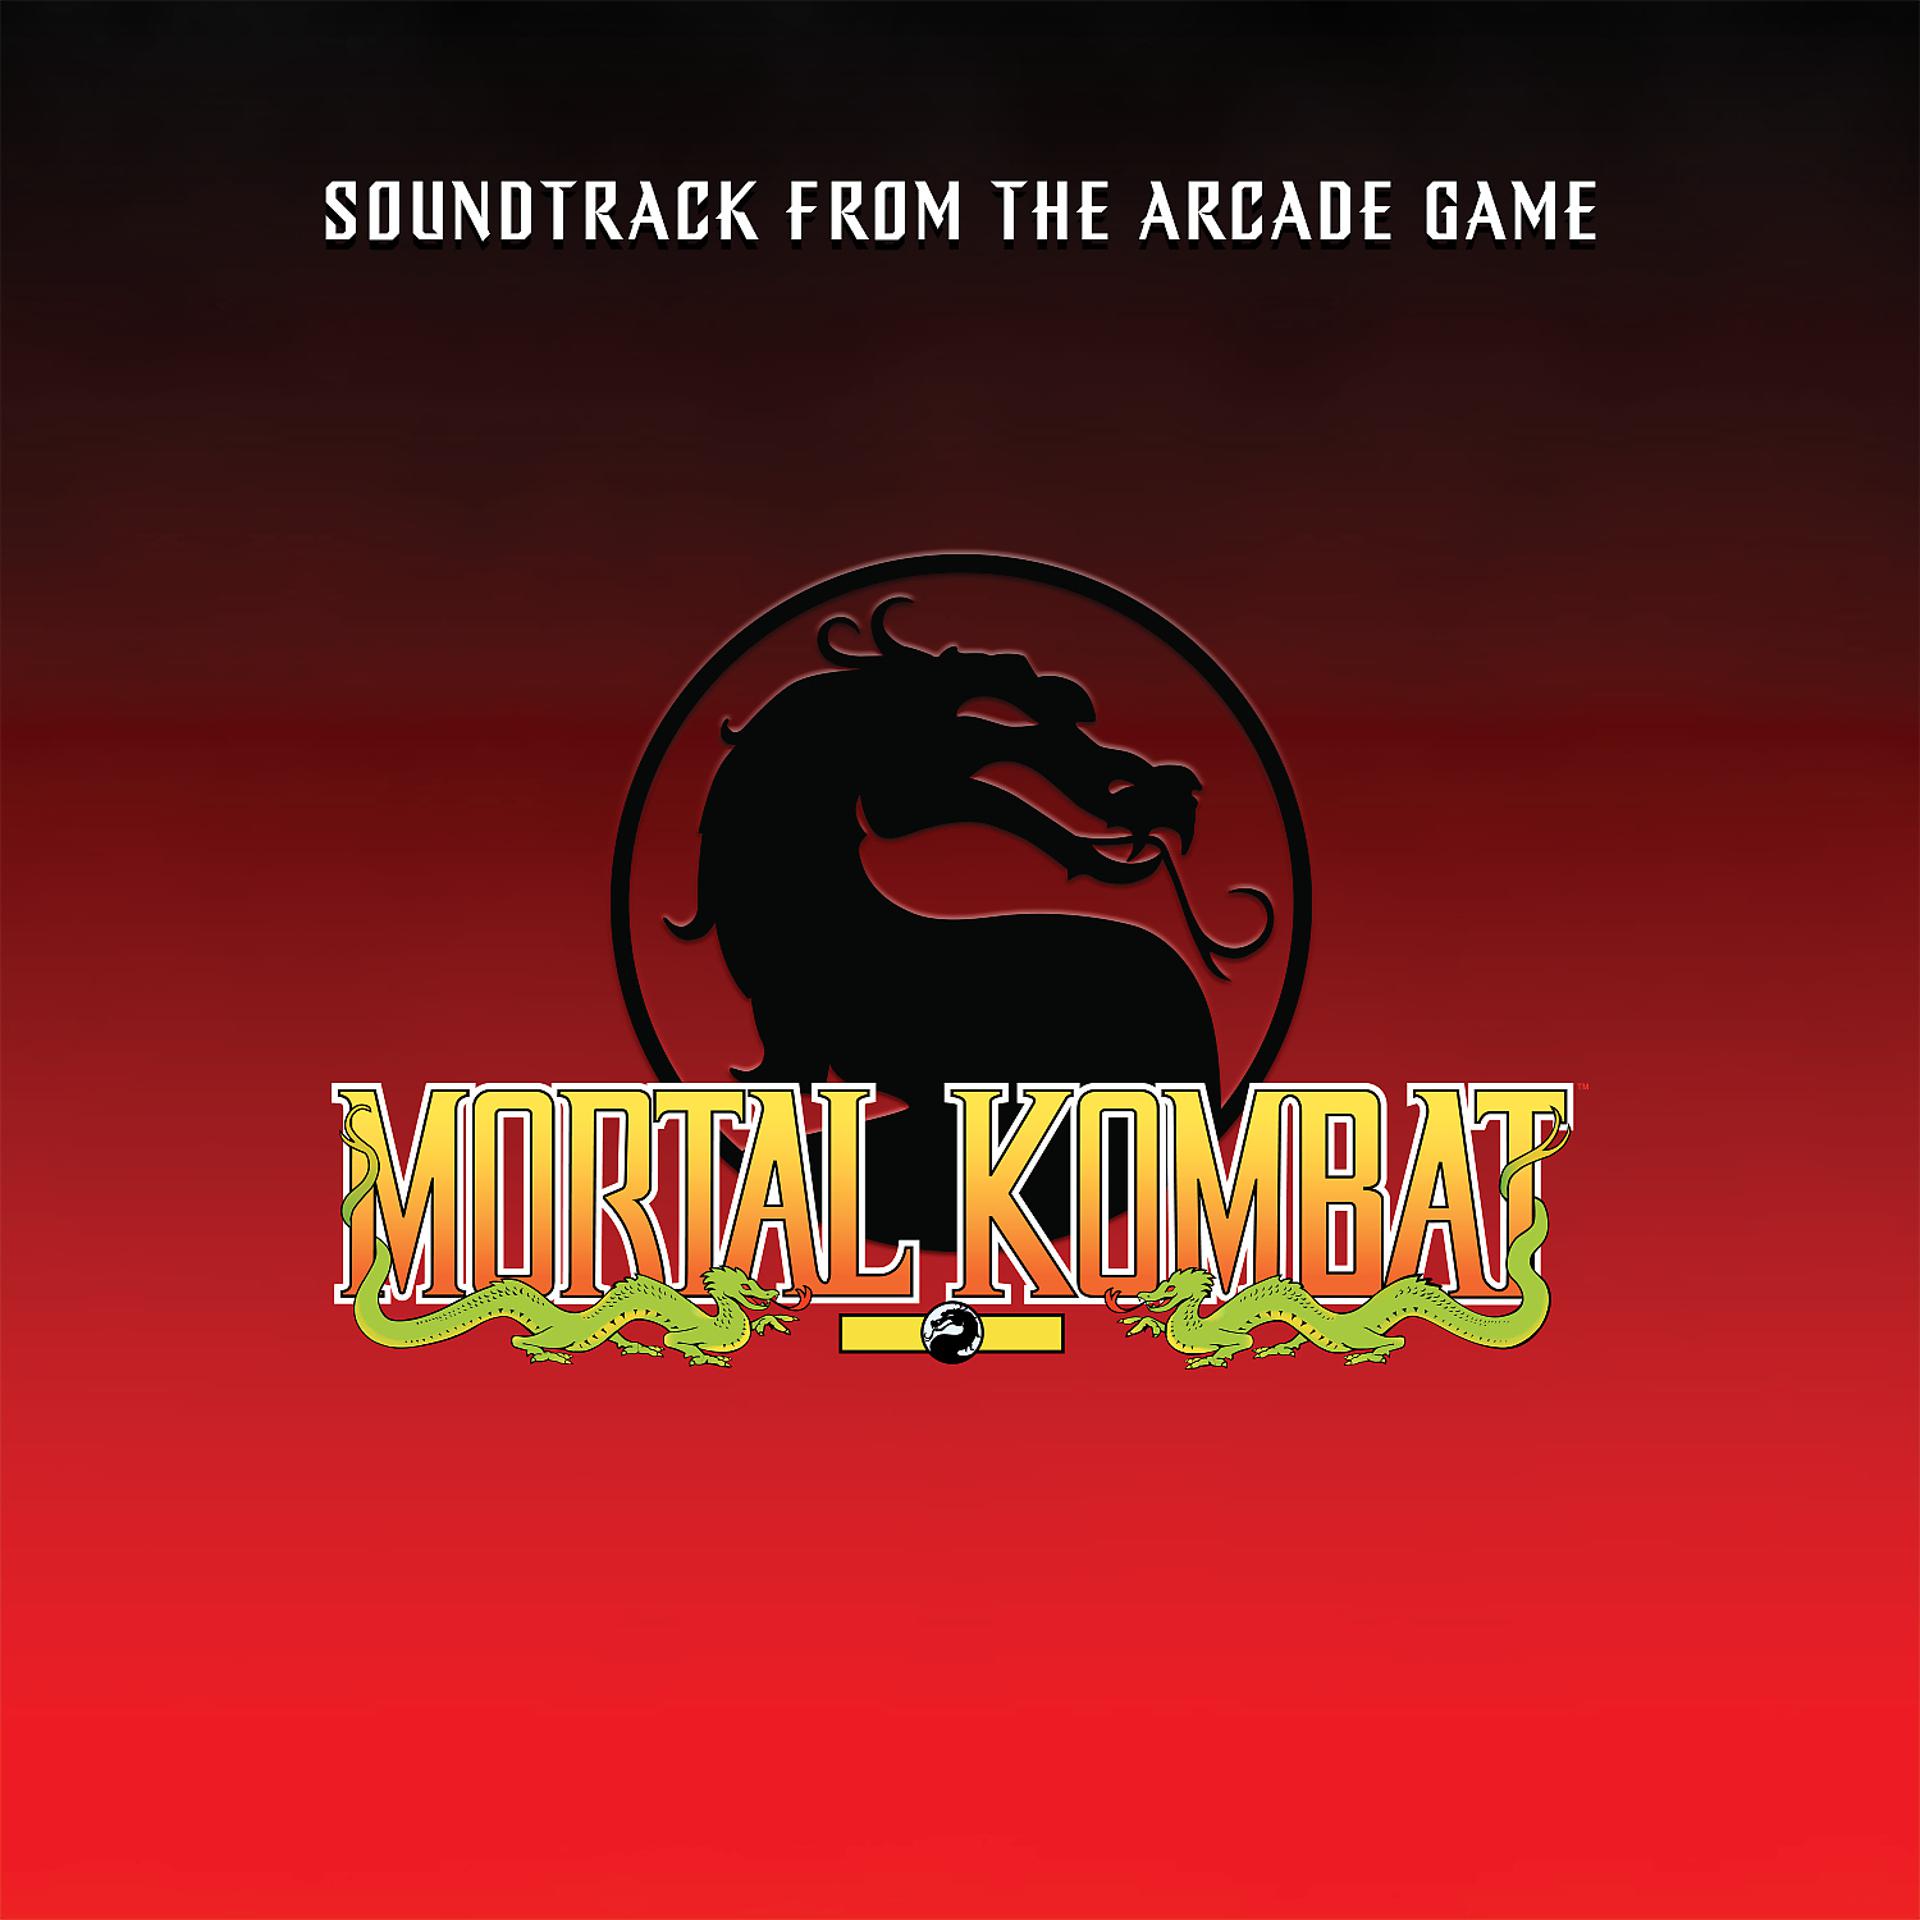 Kombat soundtrack